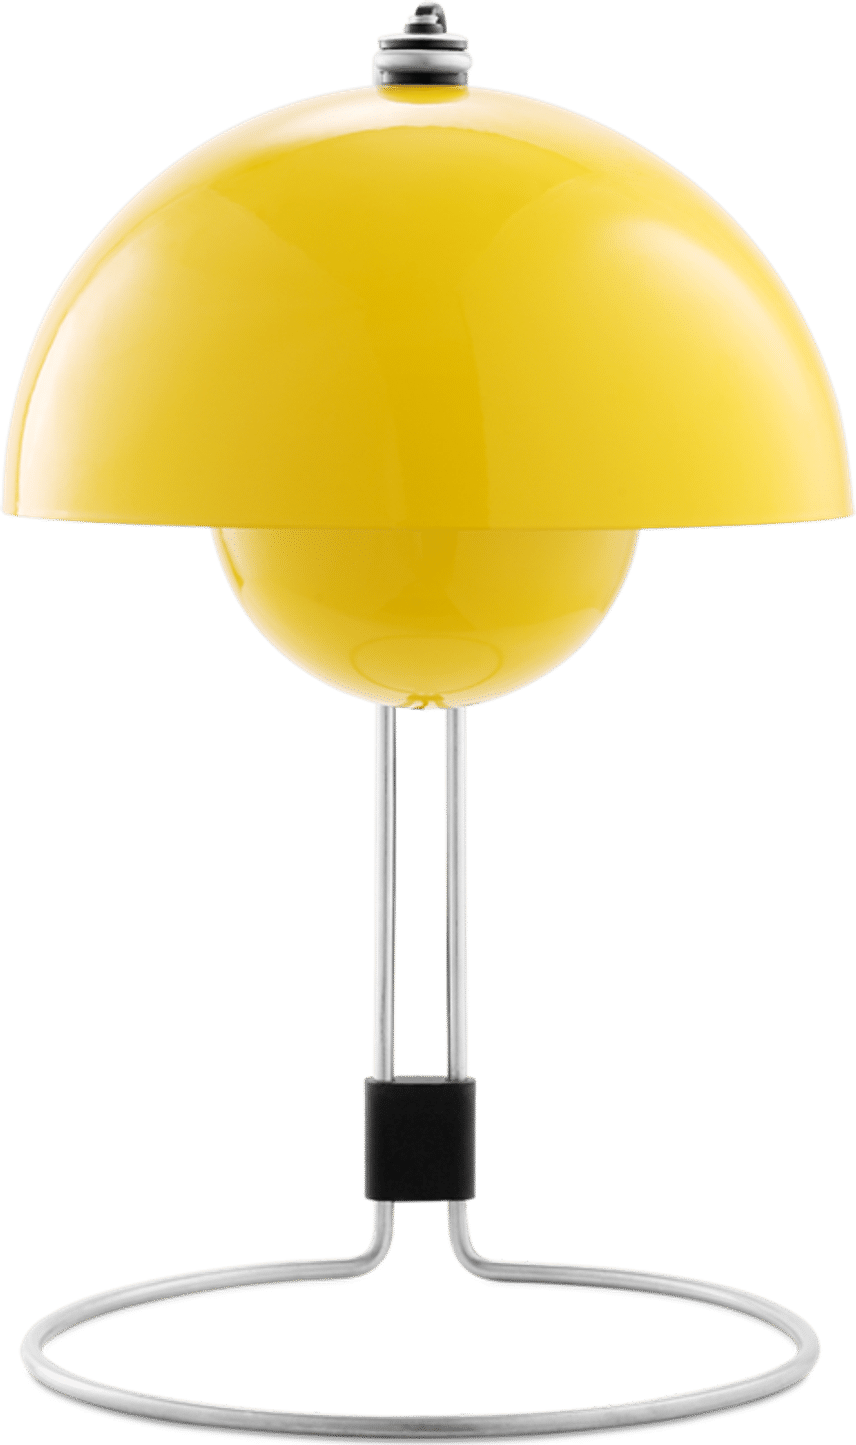 Lampada da tavolo in stile vaso di fiori VP4 Yellow image.